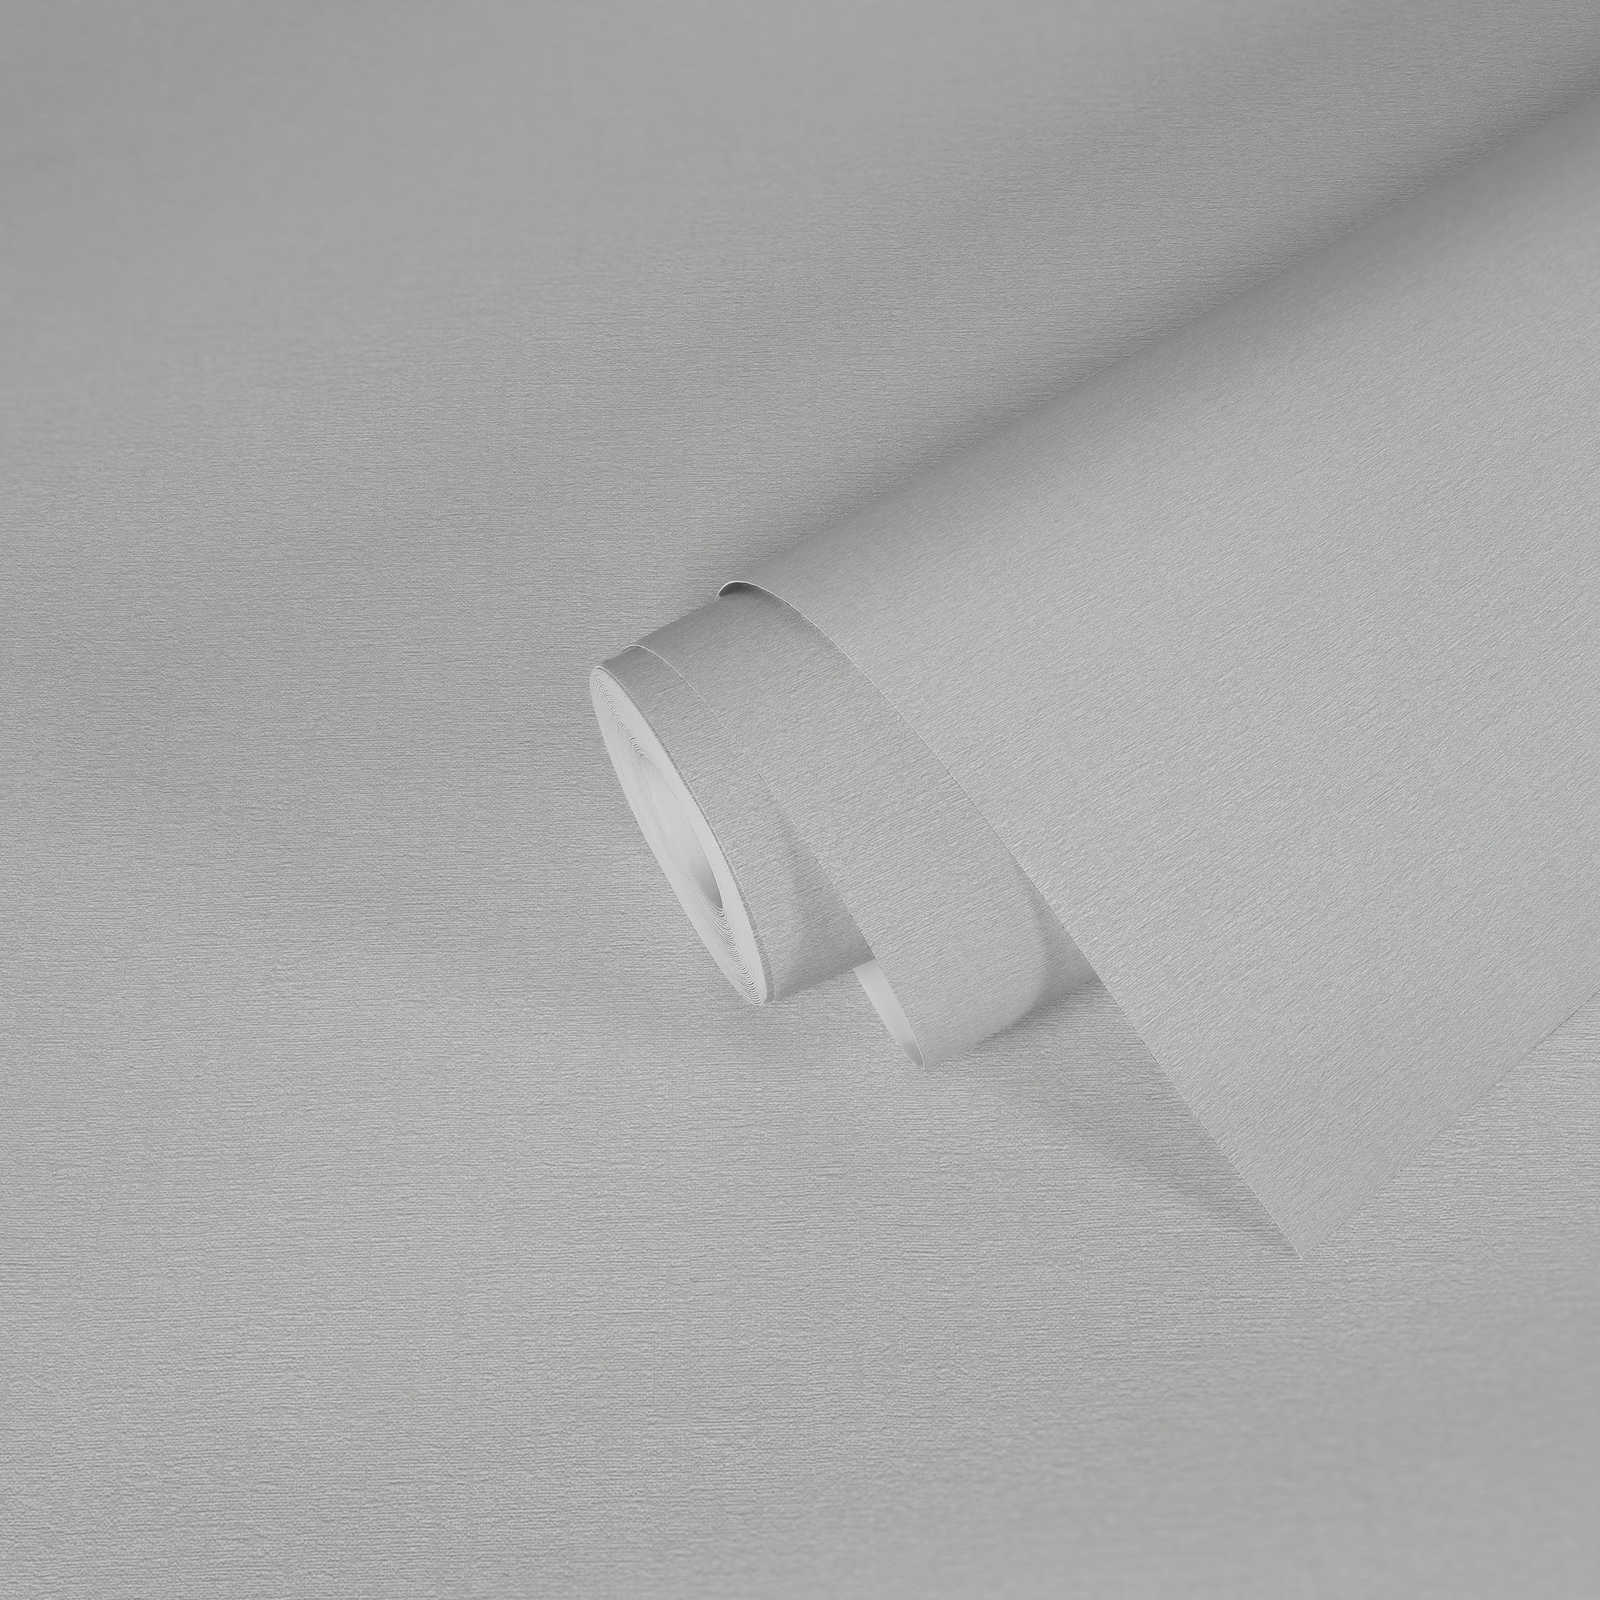             papier peint en papier uni légèrement structuré, aspect mat - blanc
        